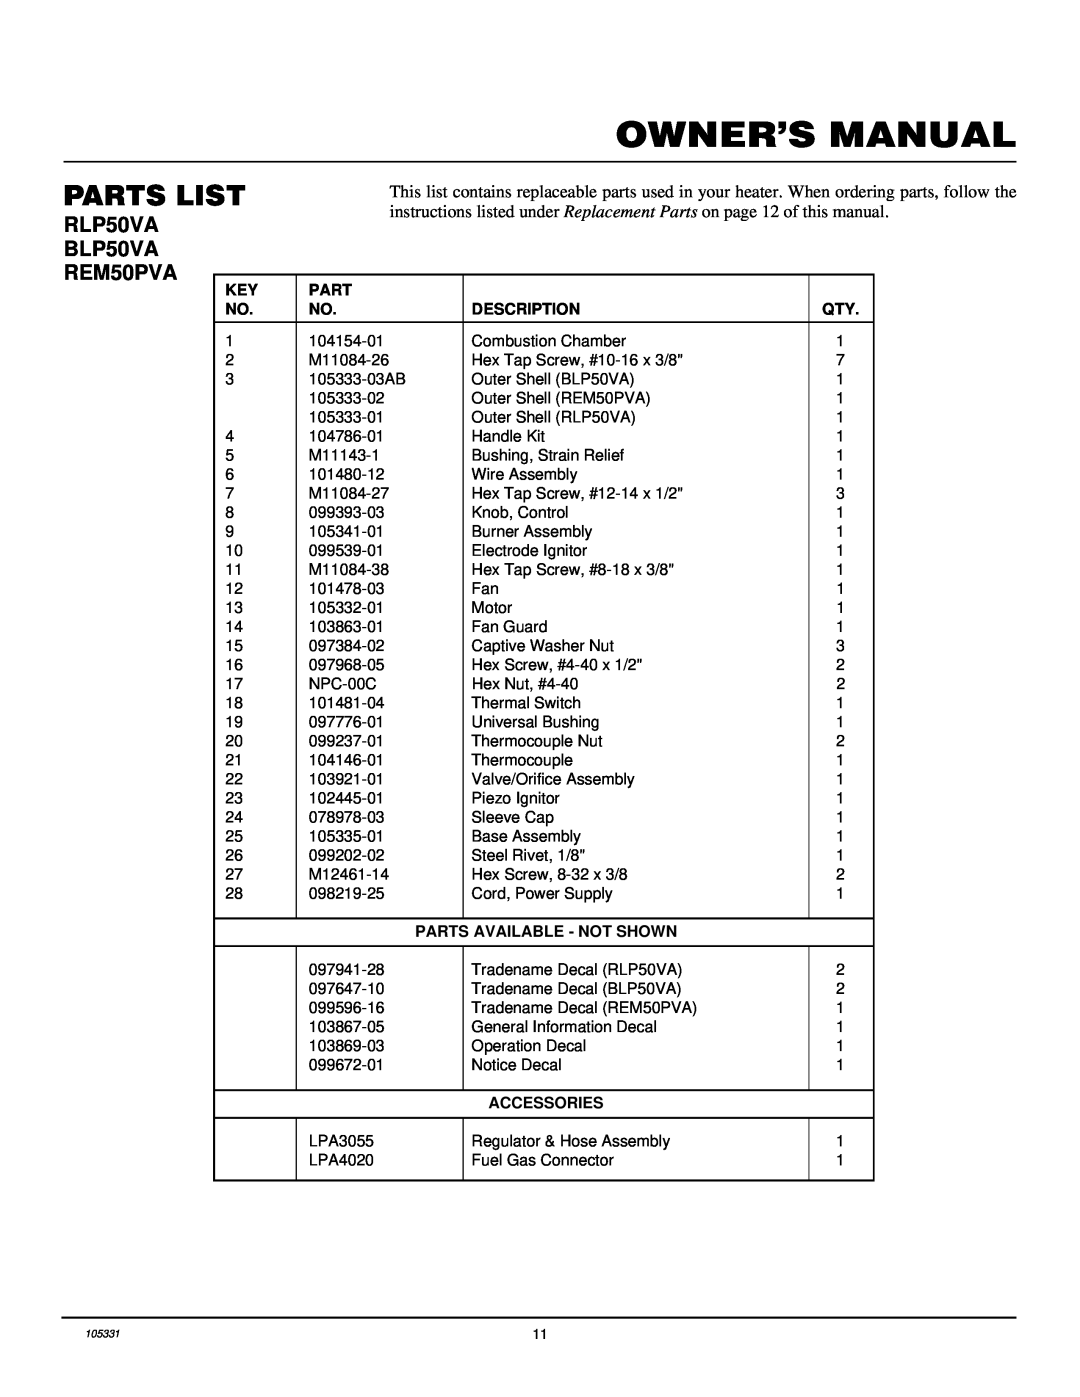 Desa REM50PVA owner manual Parts List, RLP50VA, BLP50VA 